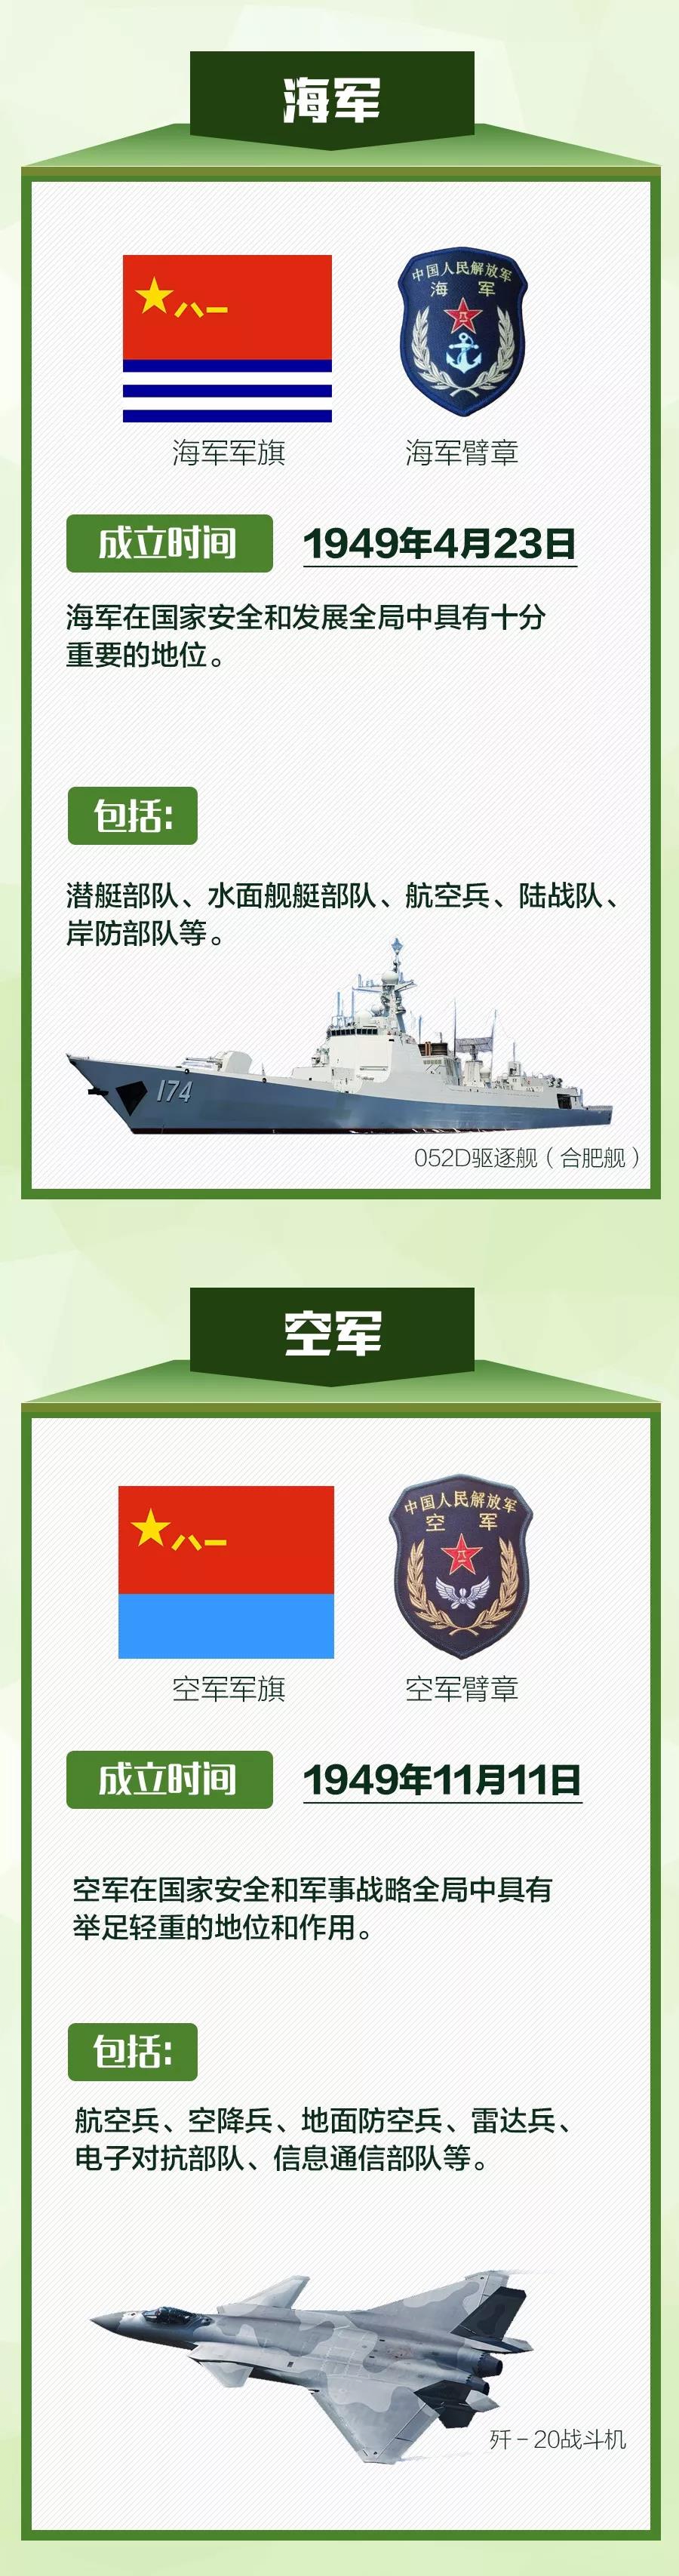 中国五大战区划分图图片